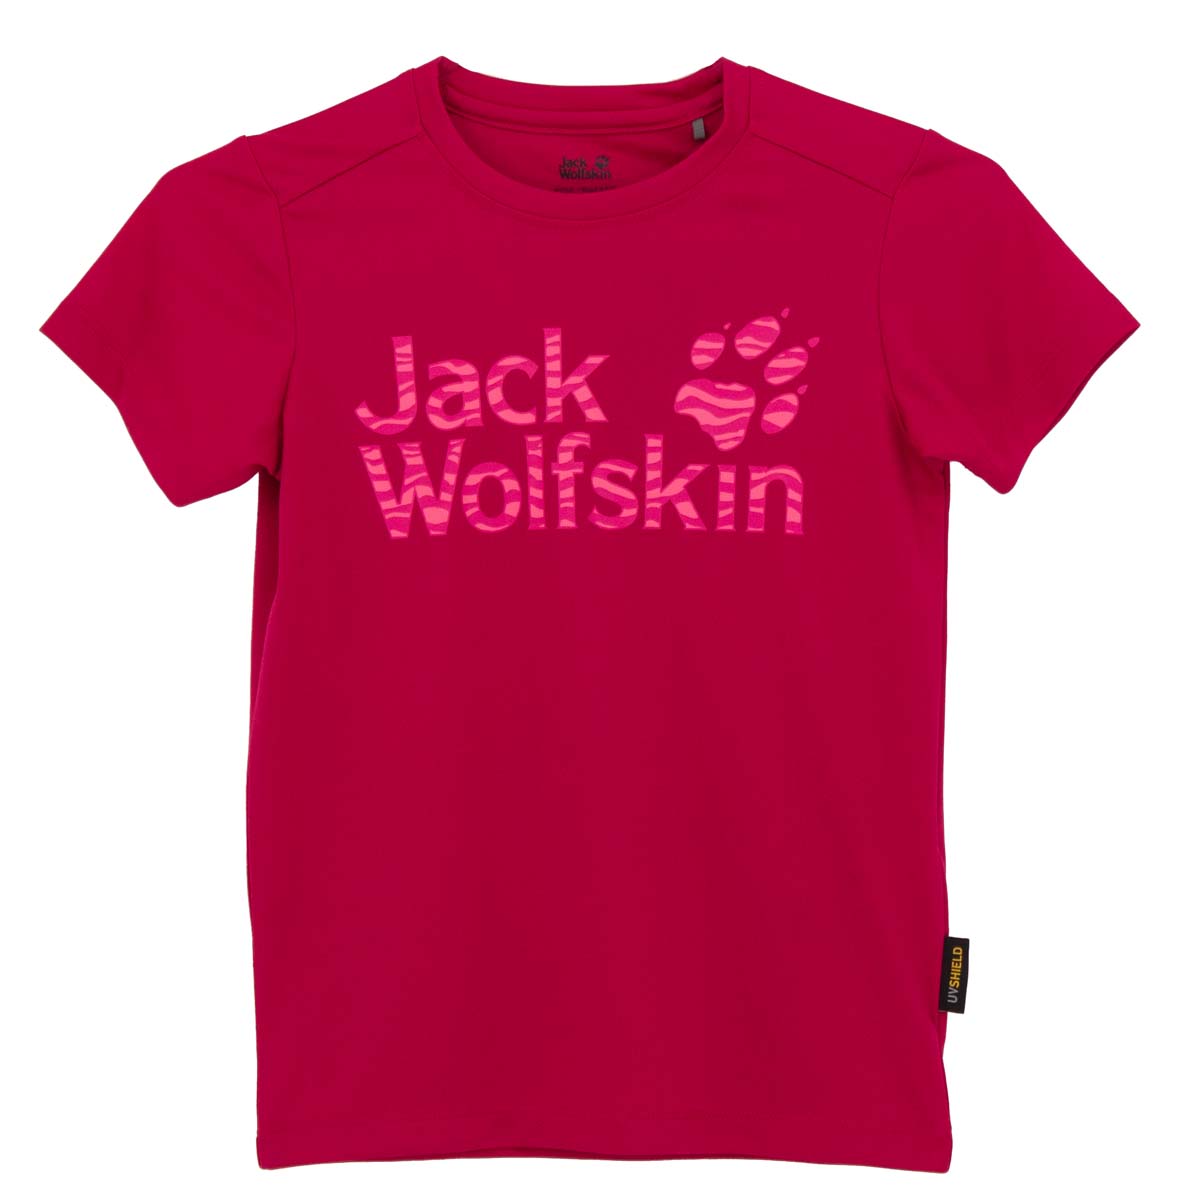 Jack Wolfskin Jungle Tee Dschungel T-Shirt UV-Shirt Kinder Pink 1607441-2081 128